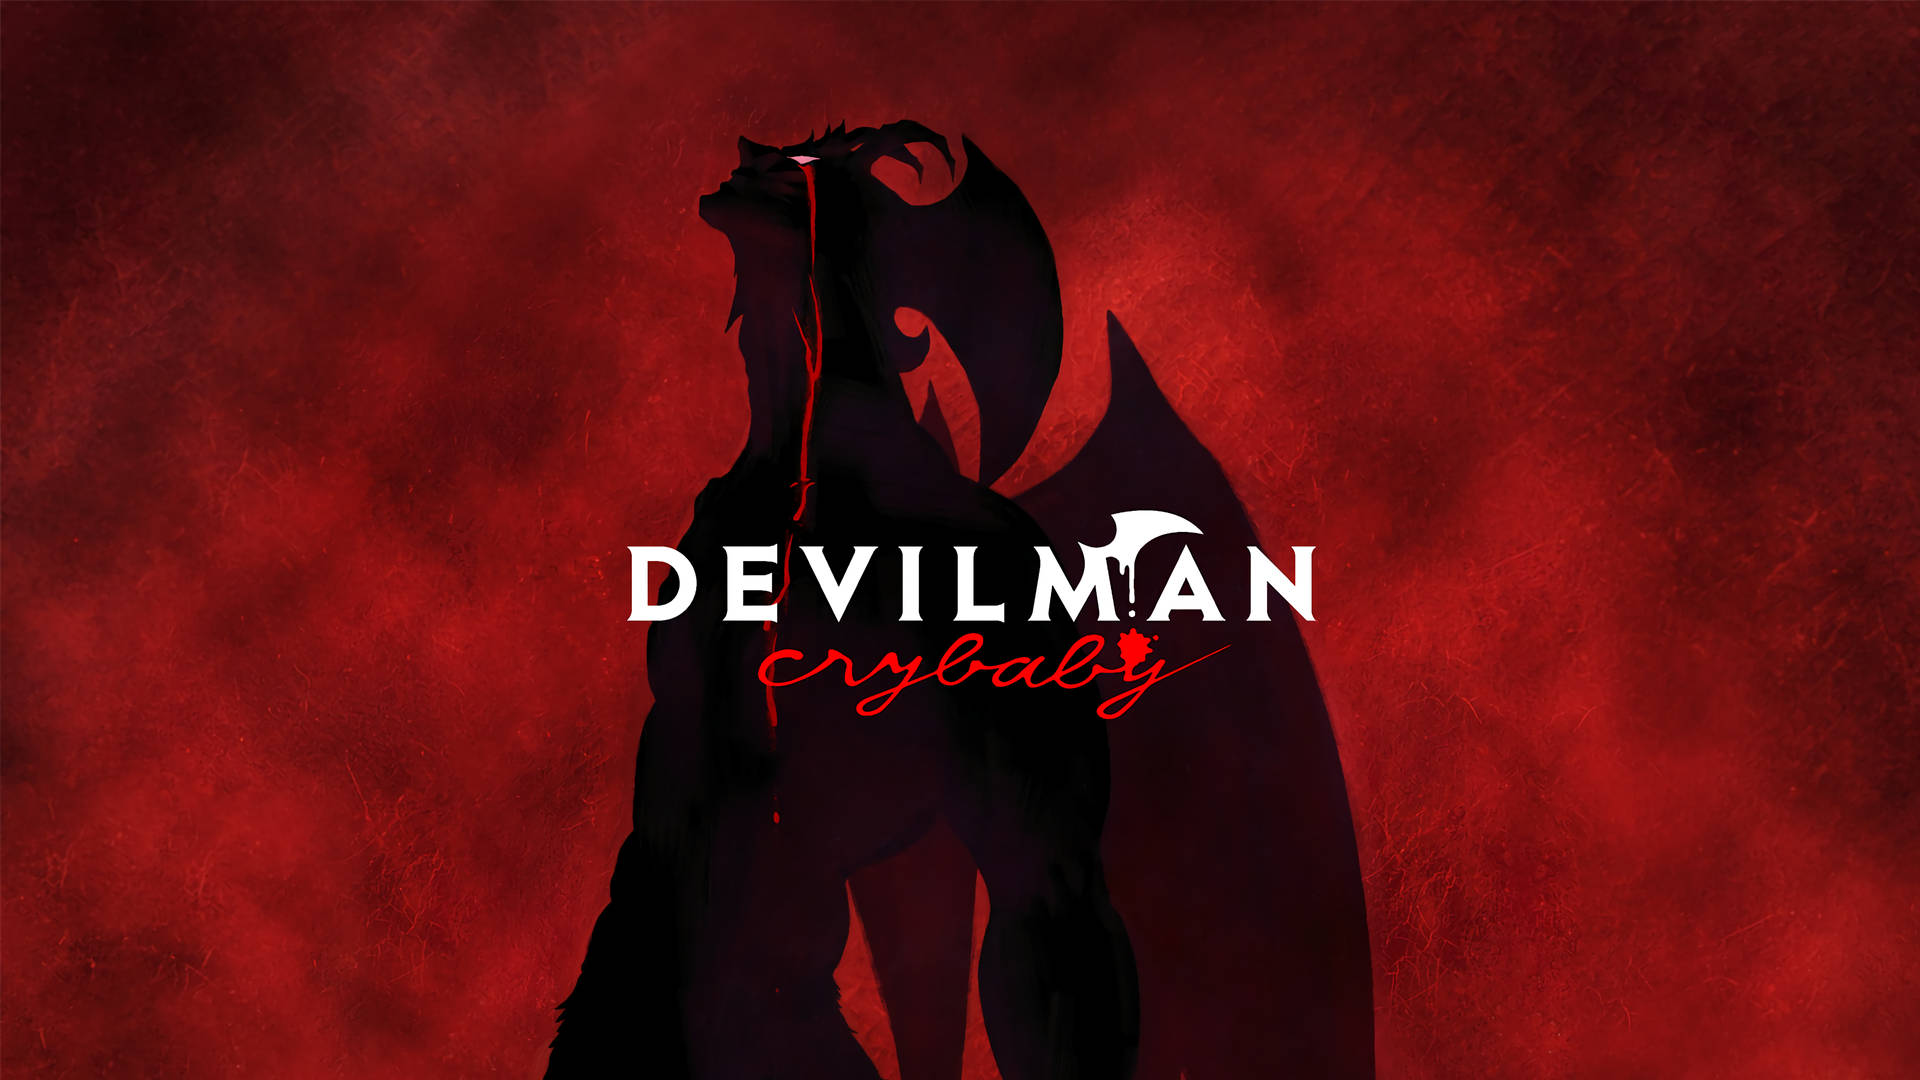 Devilman Crybaby Wallpaper Большой Фотo архив